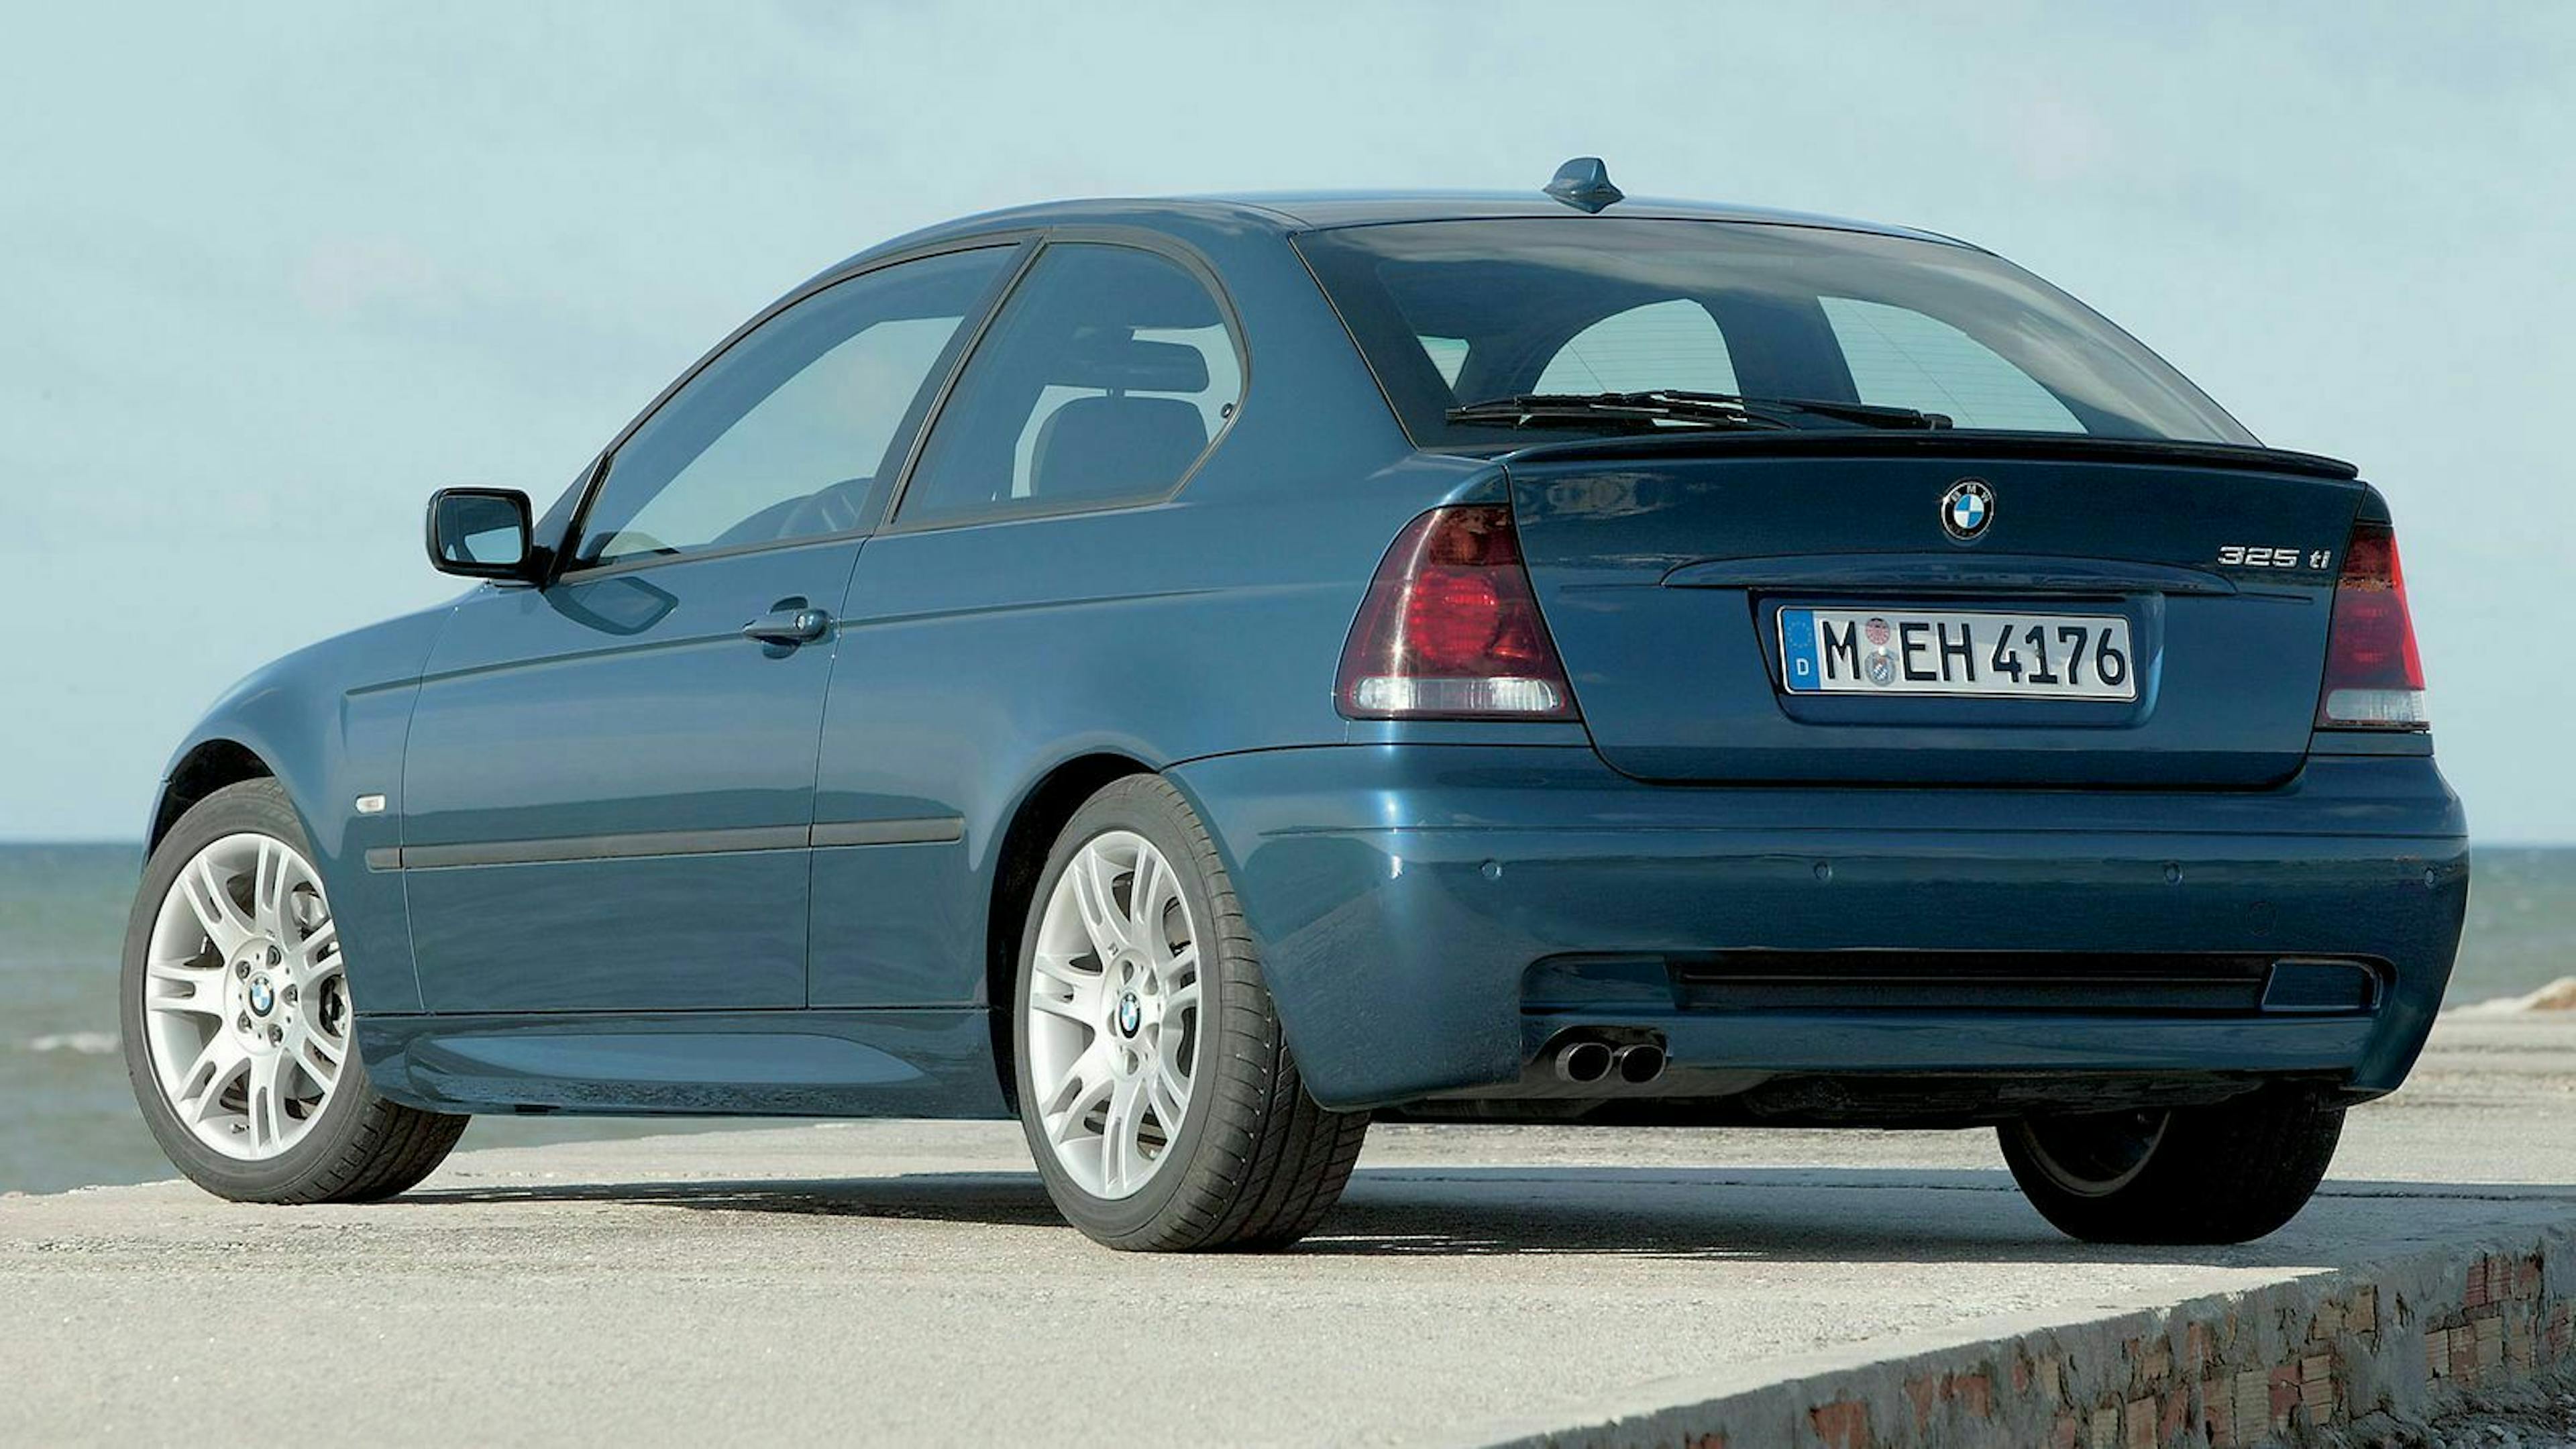 Der BMW 3er E46 Compact wurde ab 2001 gebaut